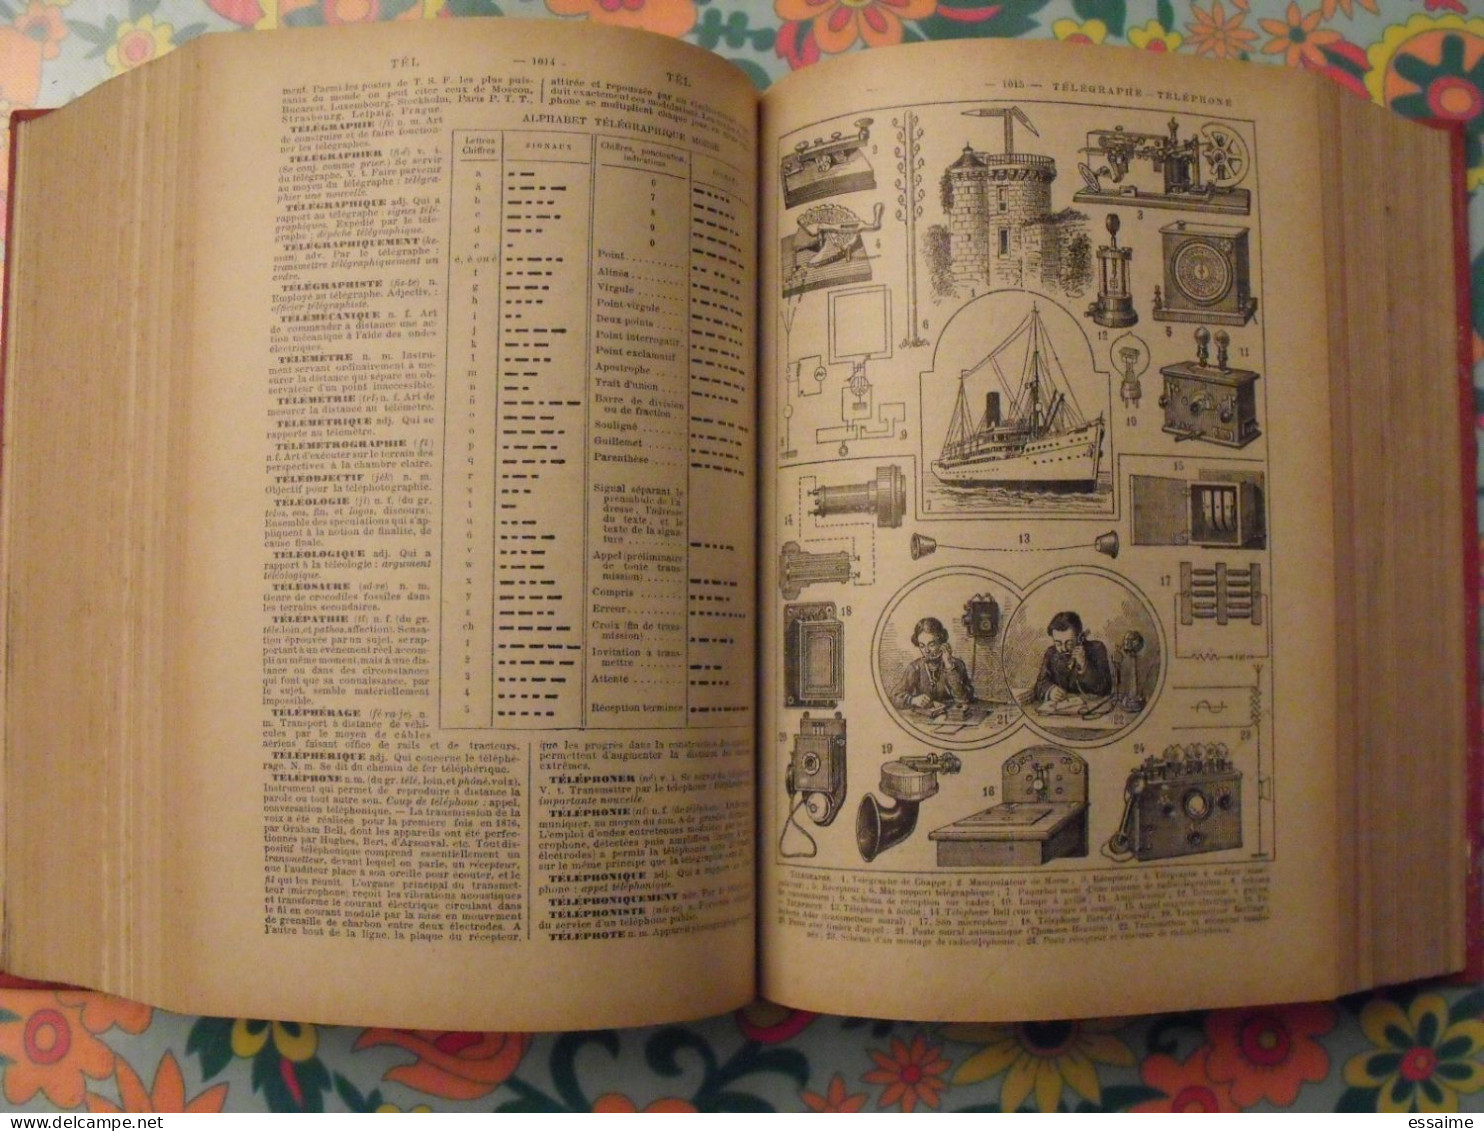 Dictionnaire Nouveau Petit Larousse illustré. Claude et Paul Augé. 1940